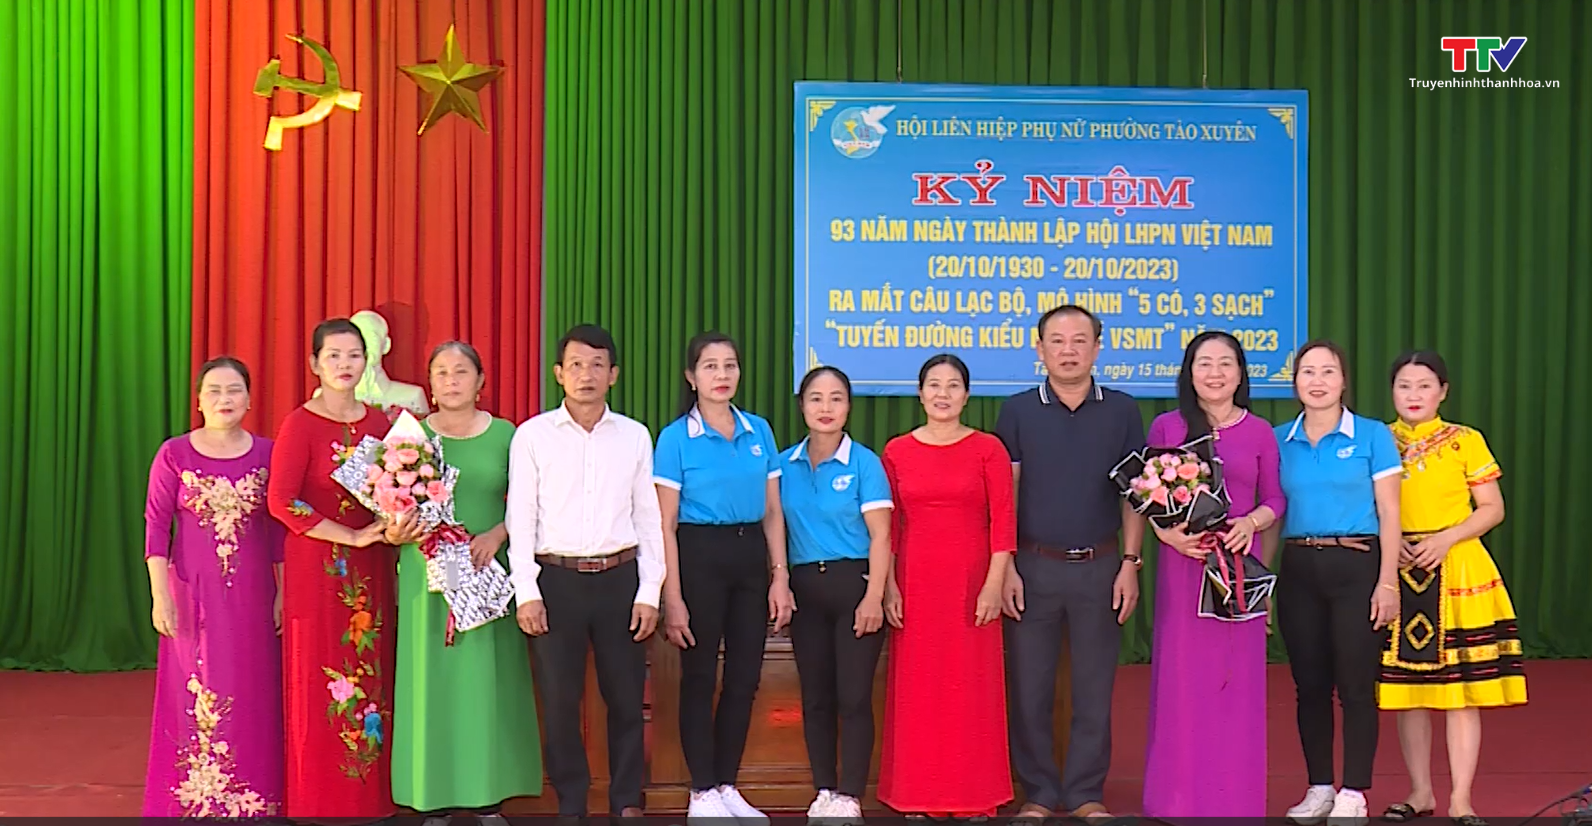 Tin tổng hợp hoạt động chính trị, kinh tế, văn hóa, xã hội trên địa bàn thành phố Thanh Hóa ngày 18/10/2023 - Ảnh 6.